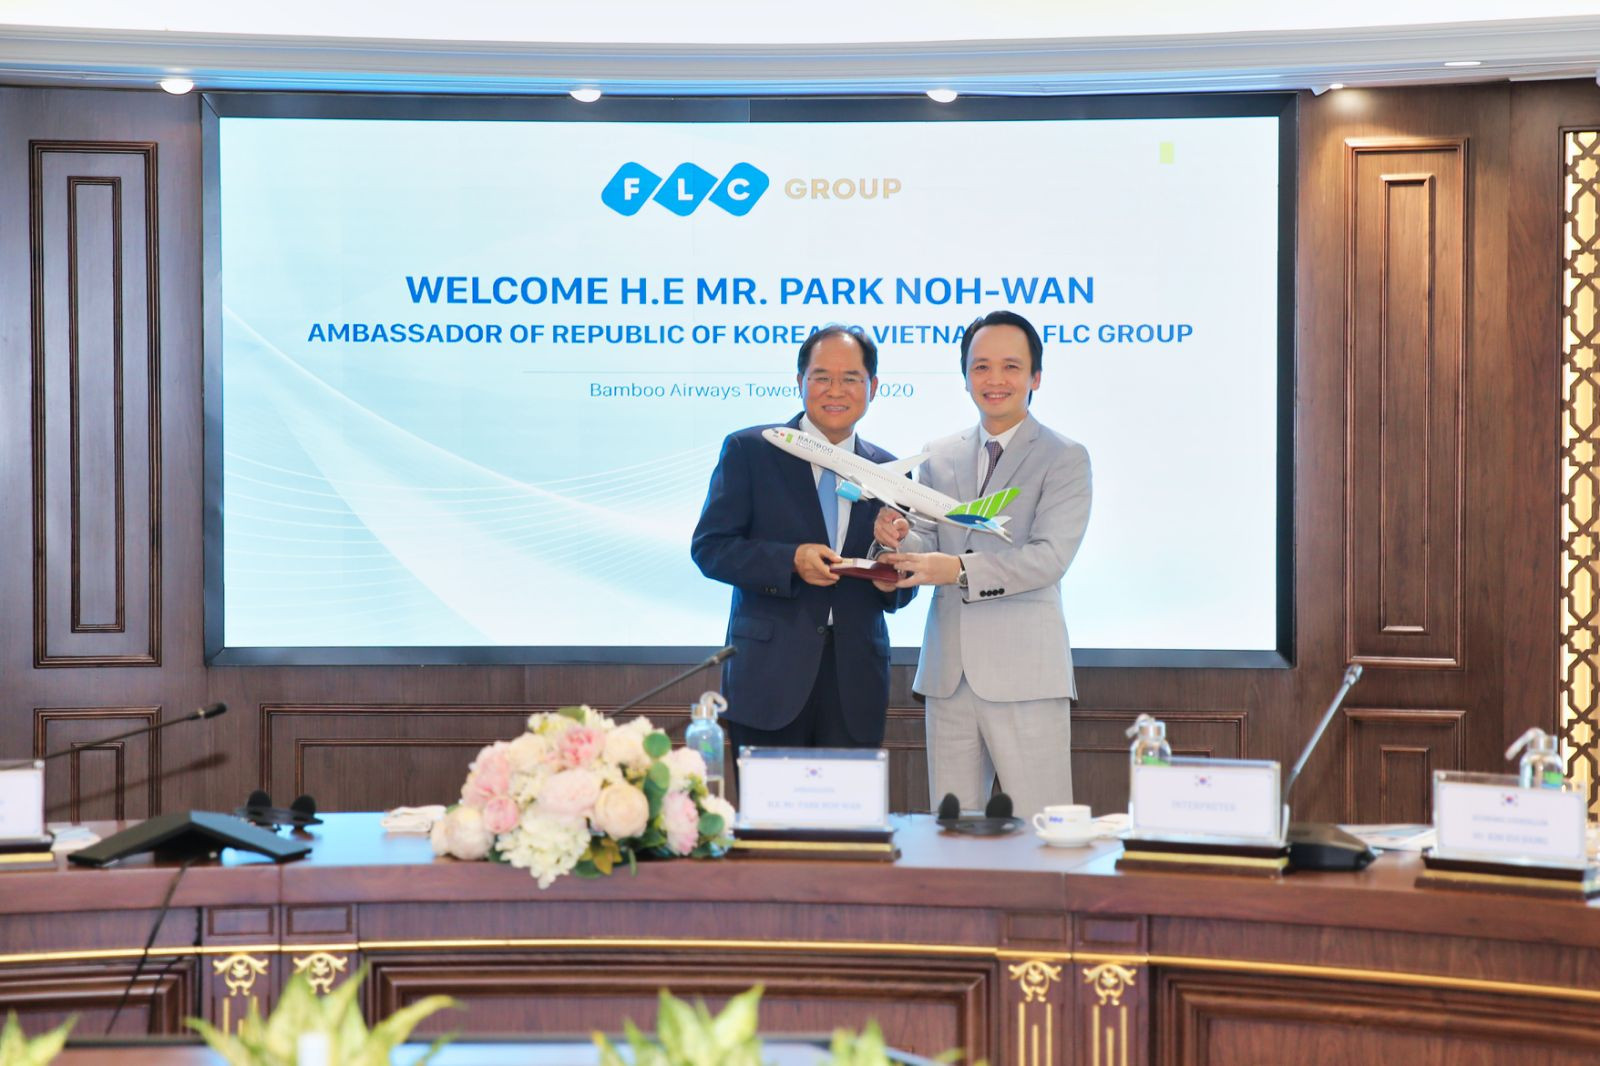 Đại sứ Hàn Quốc tại Việt Nam: “Sẵn sàng là cầu nối giữa FLC và các đối tác Hàn Quốc” 